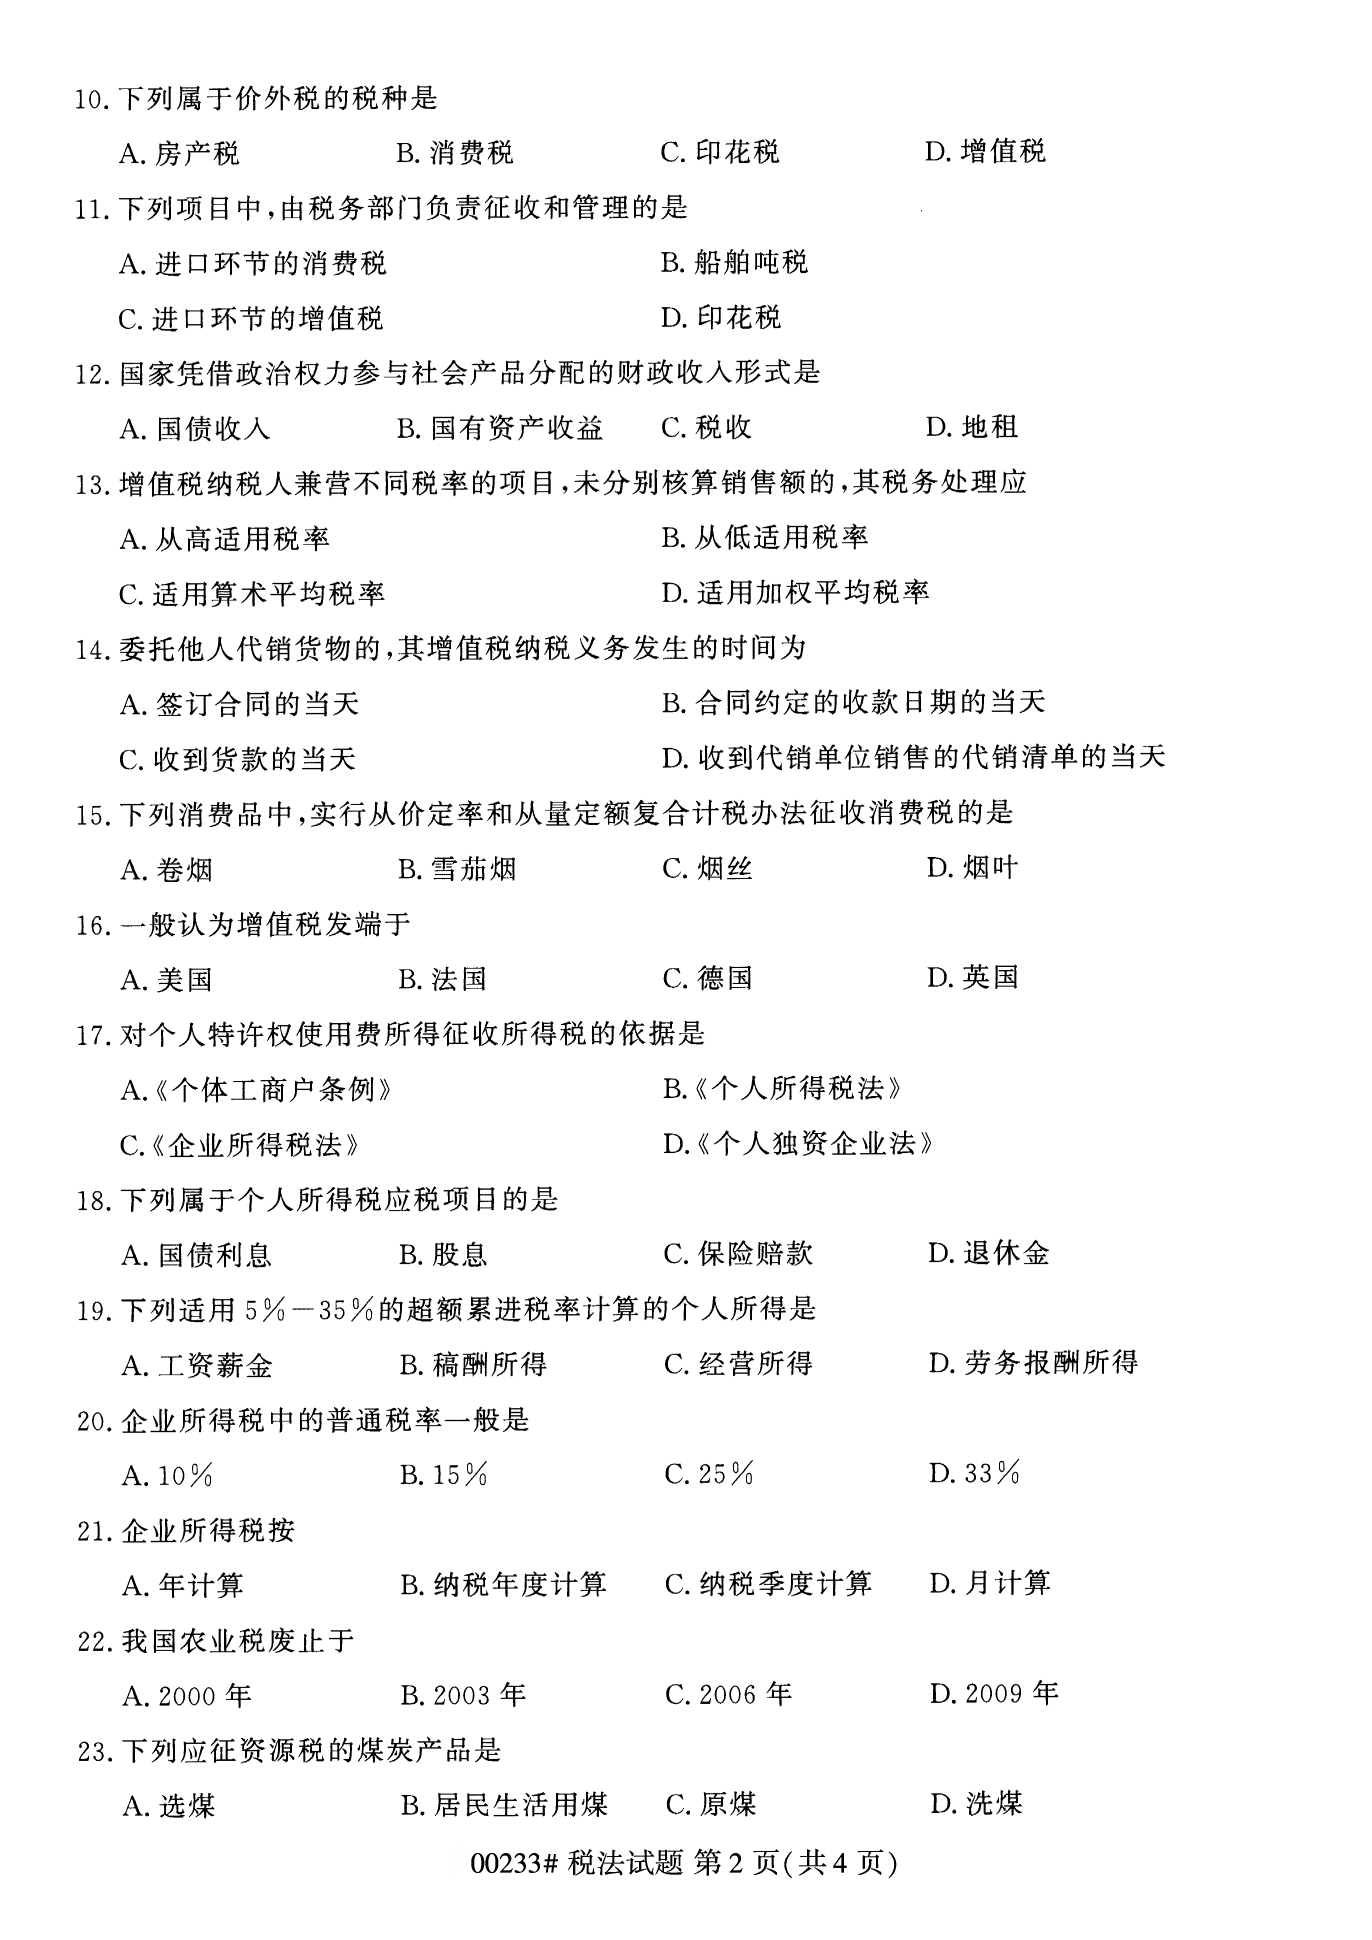 2022年10月江苏南京自考00233税法真题试卷